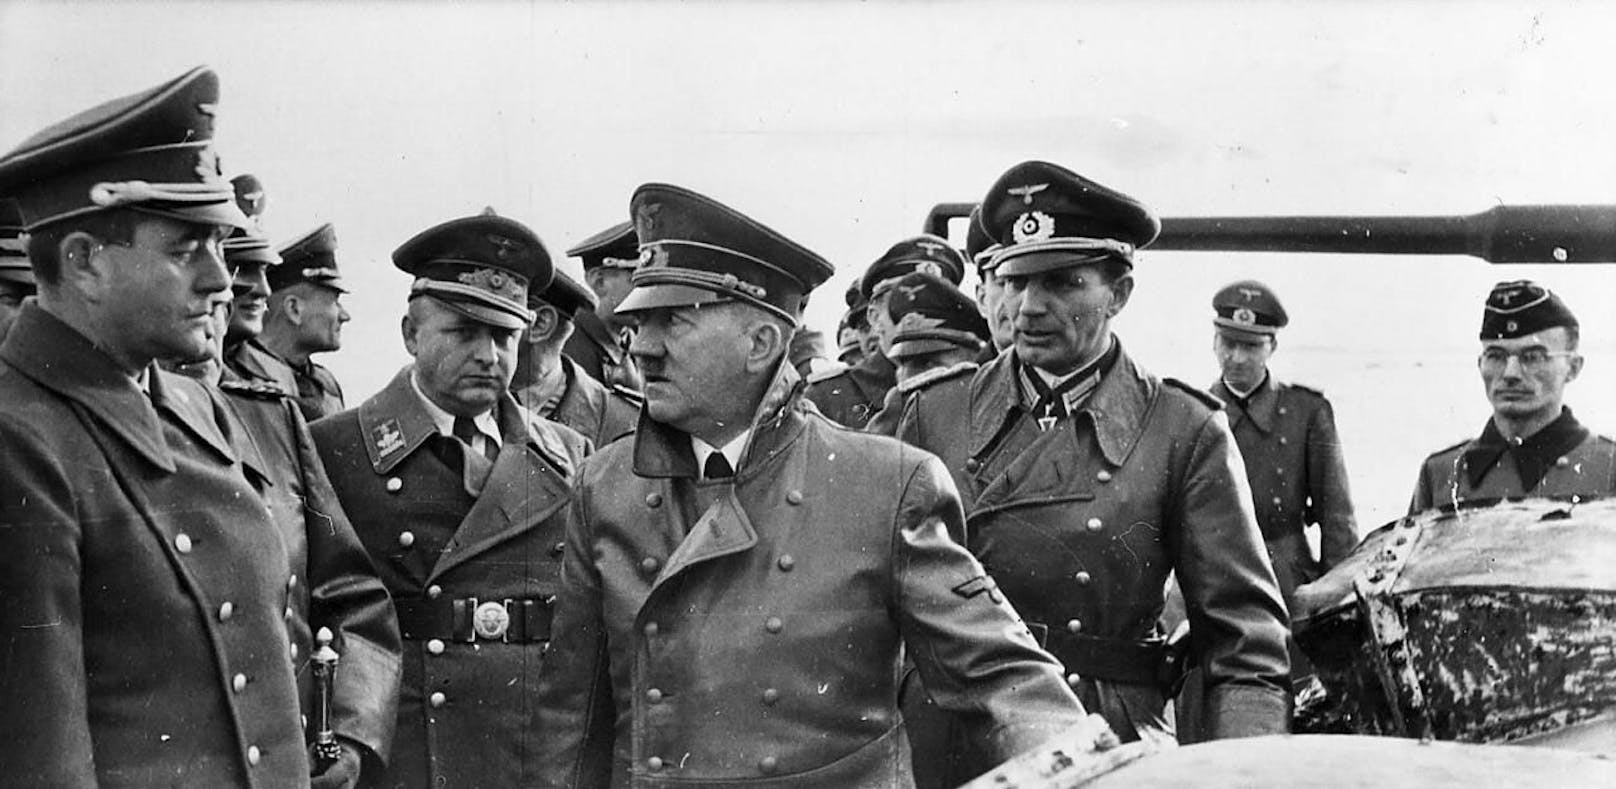 Der Vater von Hitler Alba verpasste seinen Sohn den Namen, ohne den historischen Kontext zu kennen.